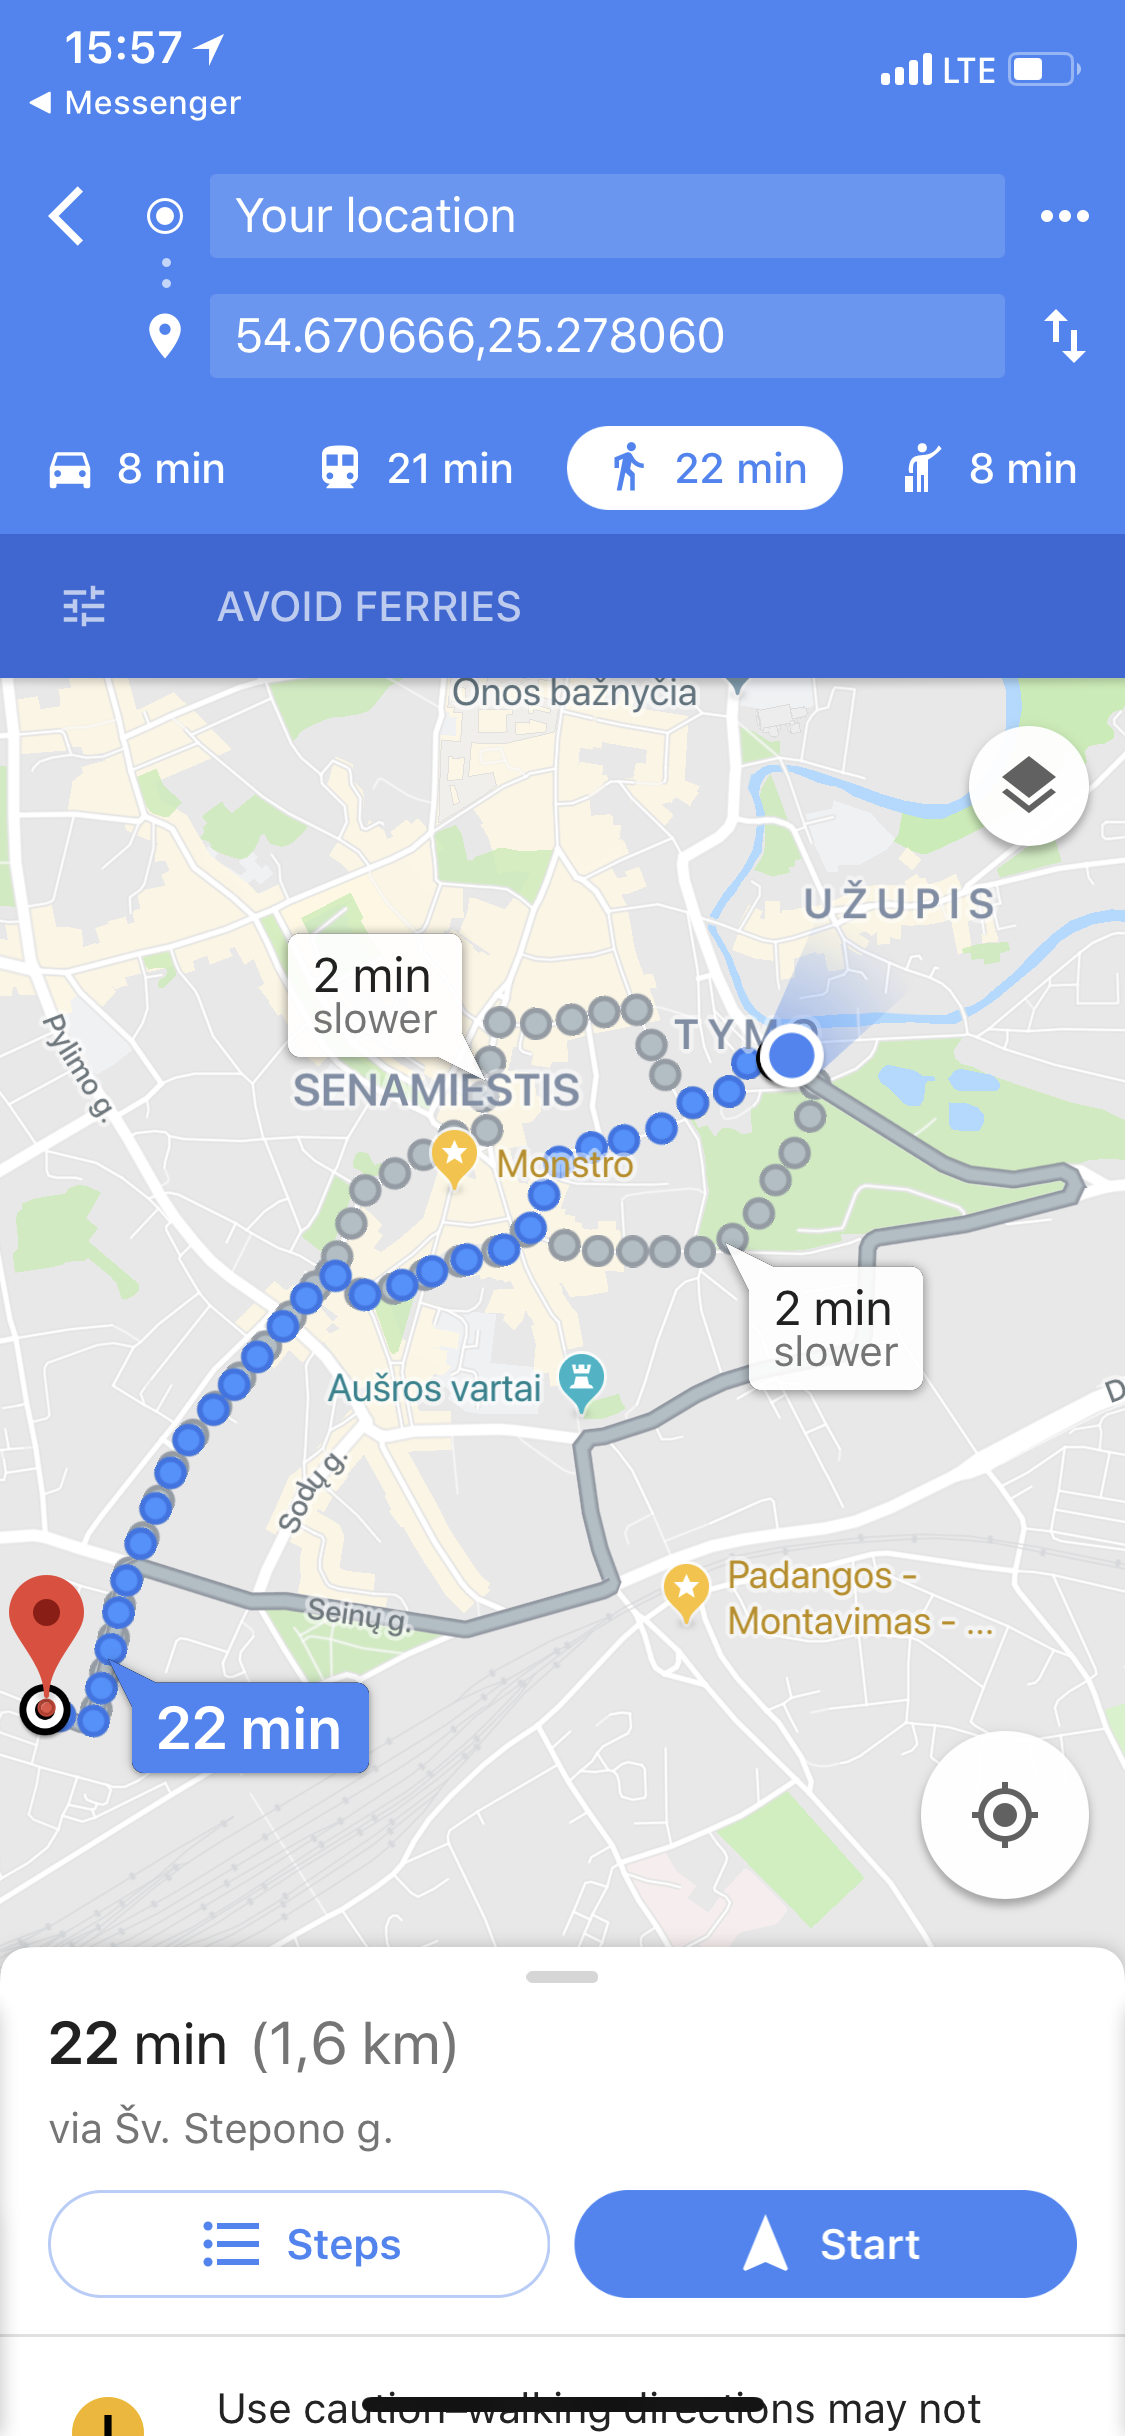 Буквально вчерашний пример. Надо добраться от ярмарки до дома друзей. Пешком — 22 минуты, на транспорте — 21 (стоит 2 евро), на убере — 8 минут (стоит 2.5 евро). Выбор очевиден.